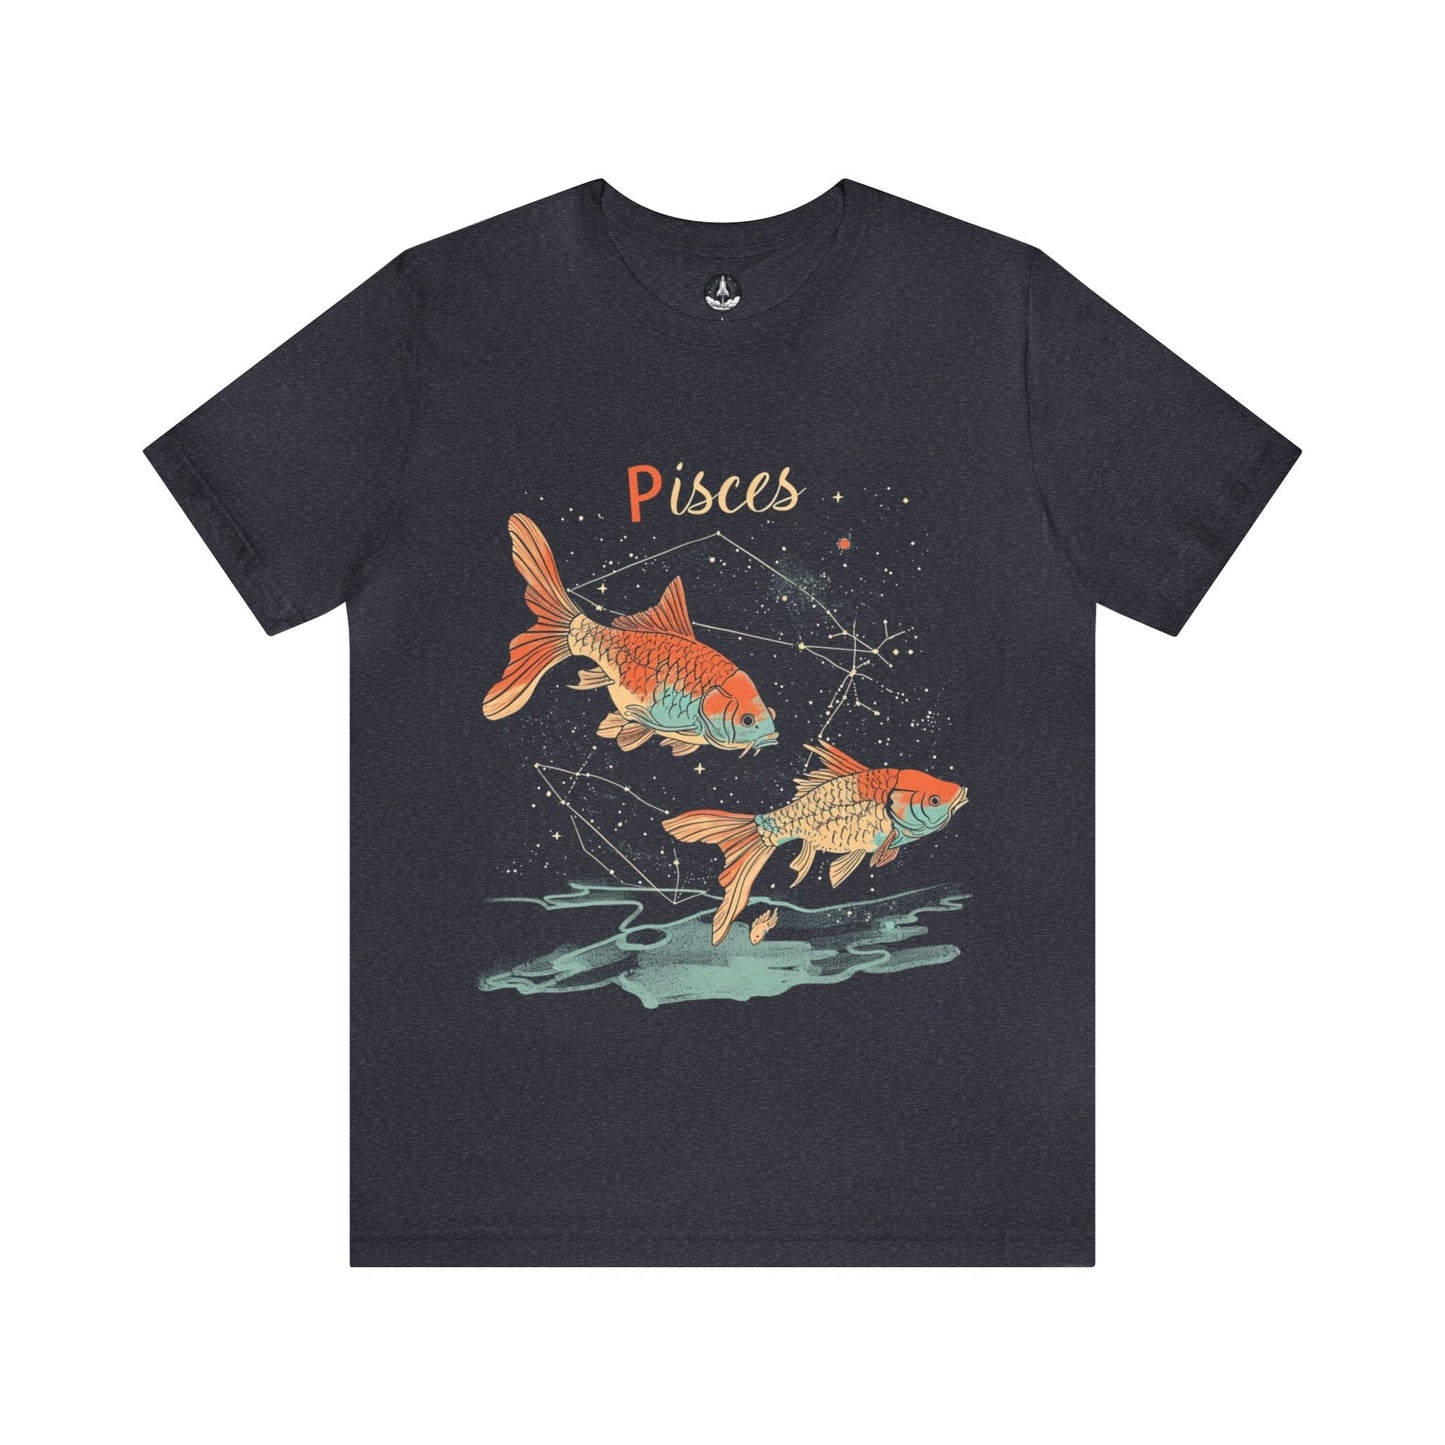 T-Shirt Heather Navy / S Pisces Art T-Shirt: Organic Cotton Zodiac Wear